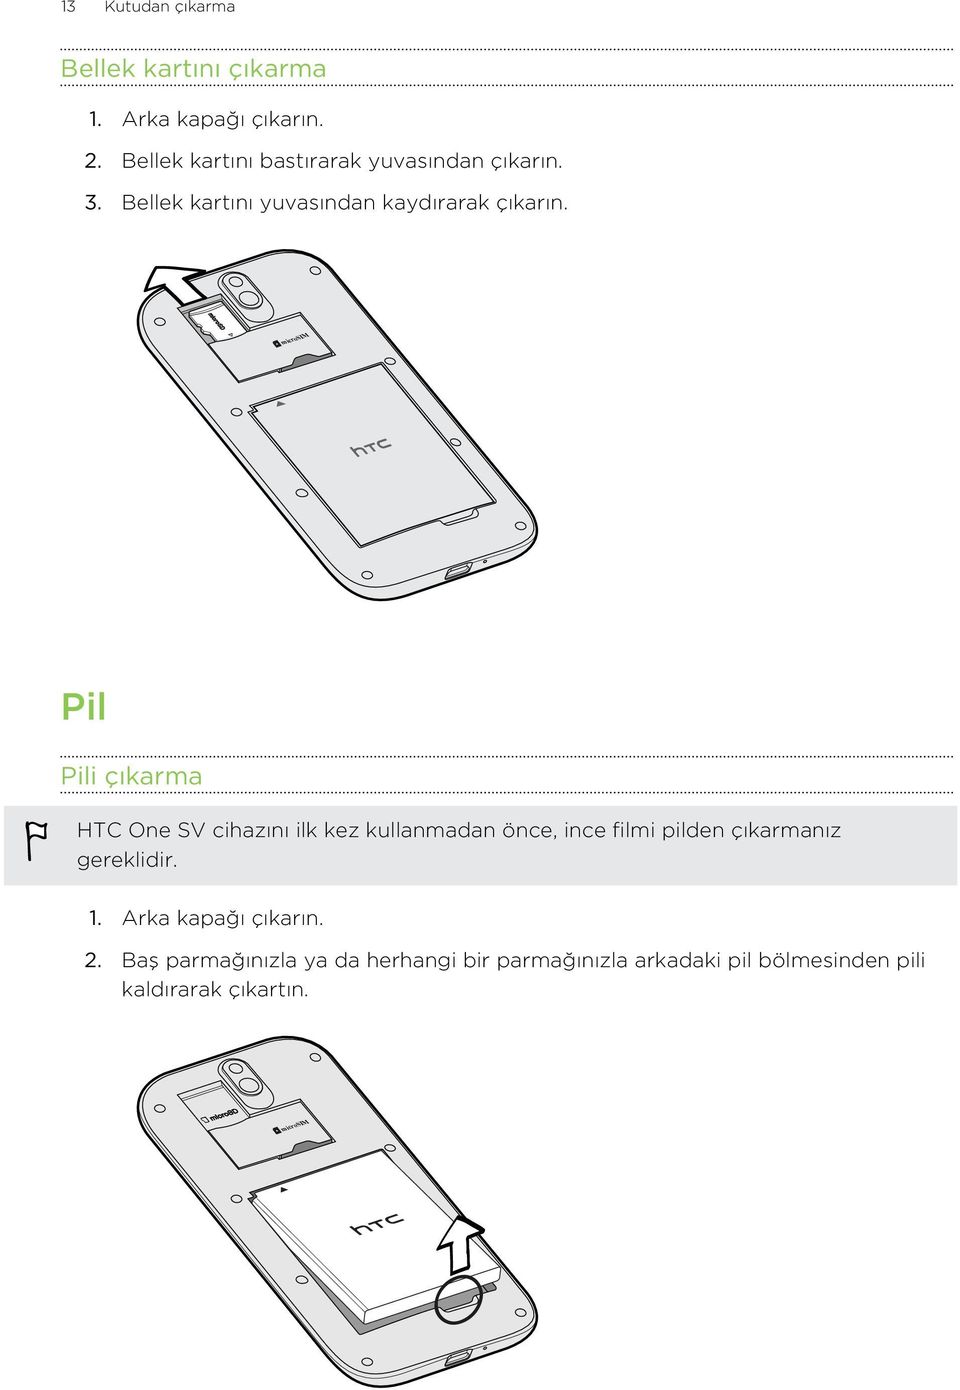 microsim Pil Pili çıkarma HTC One SV cihazını ilk kez kullanmadan önce, ince filmi pilden çıkarmanız